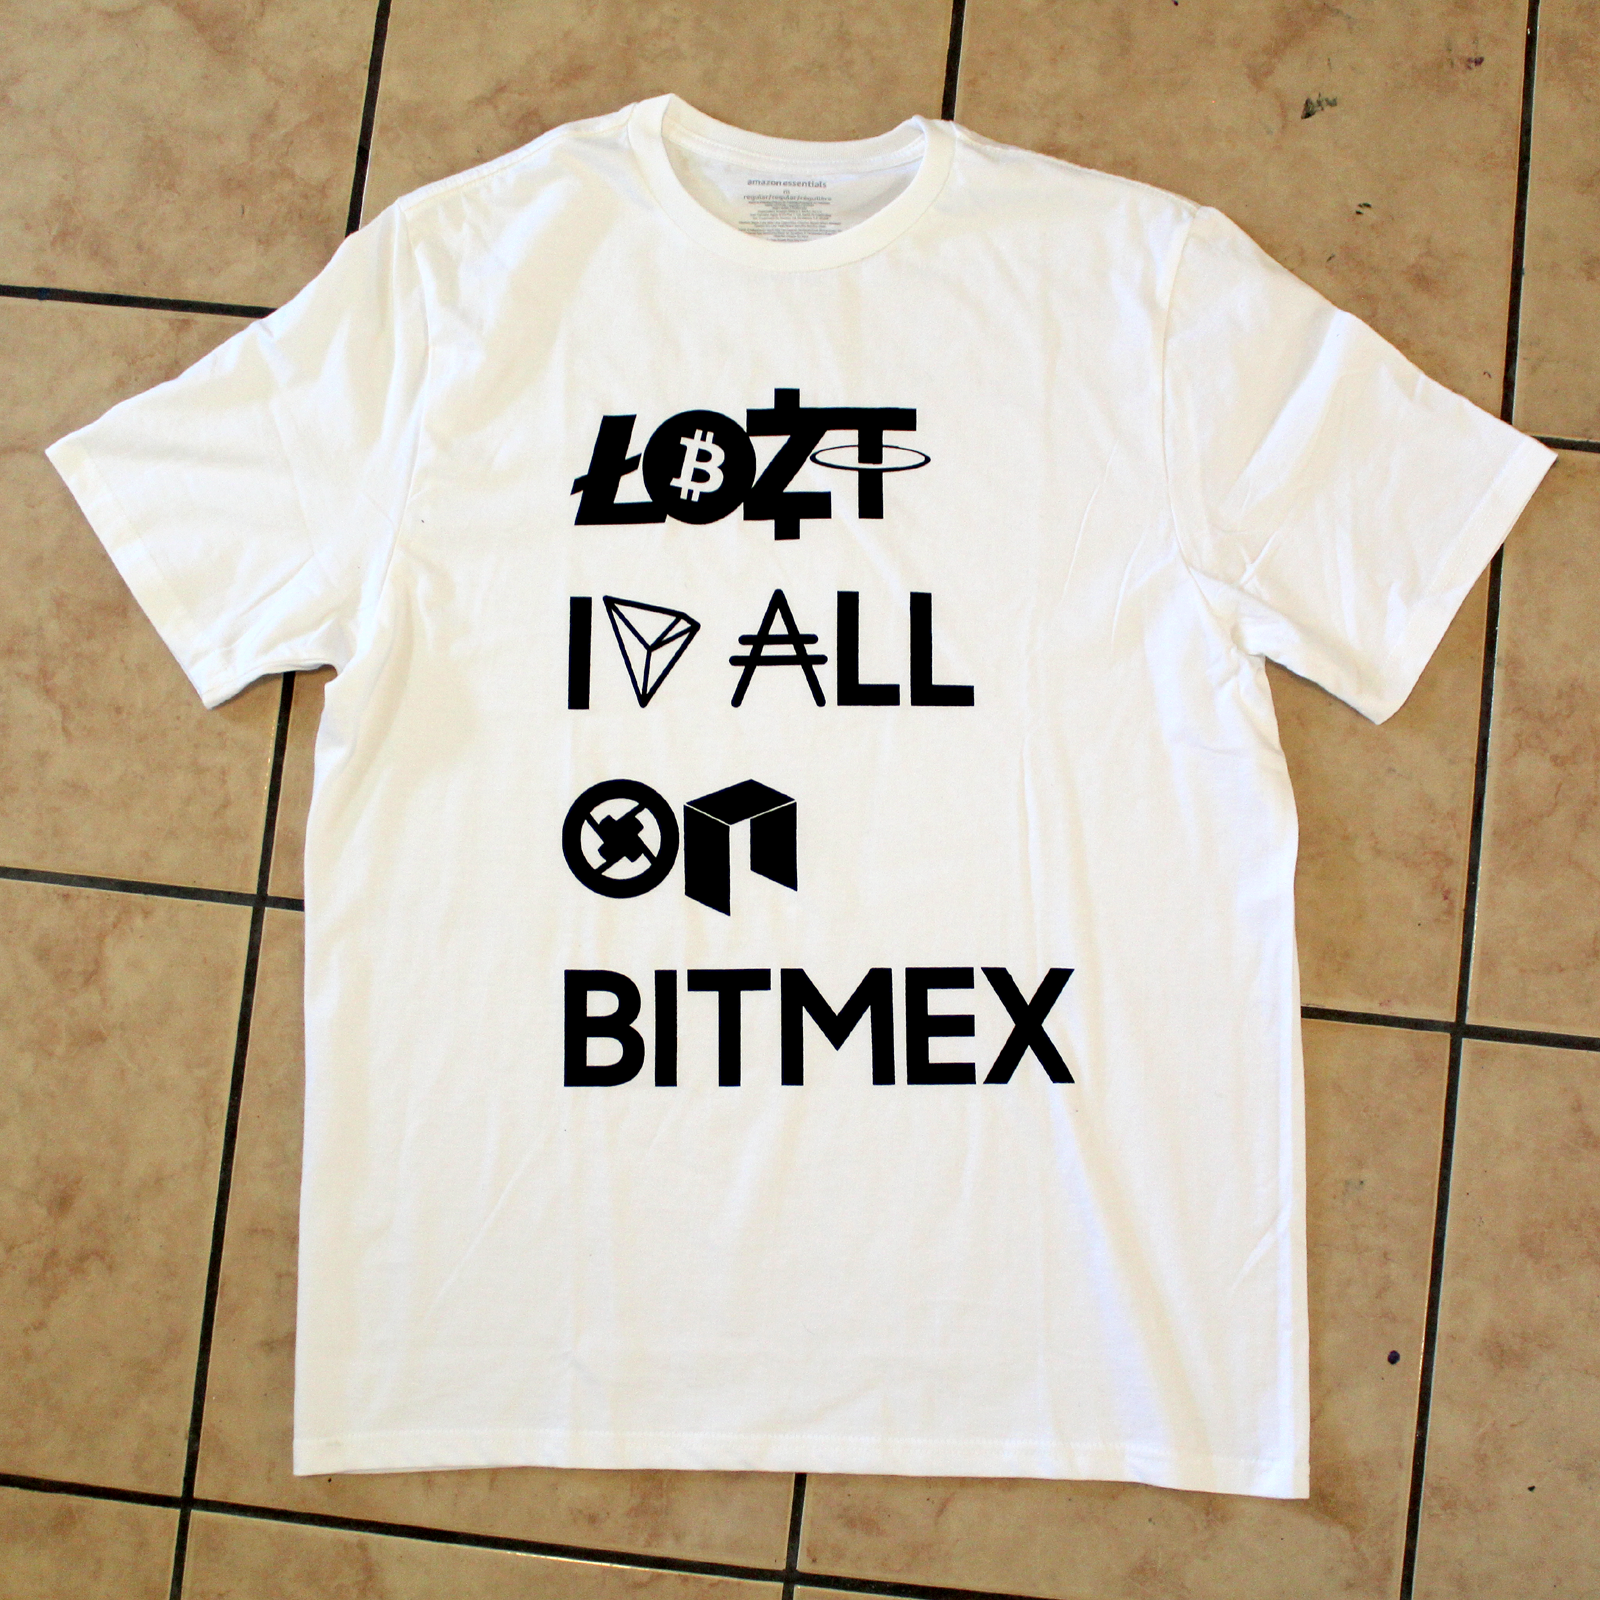 Lost it All on Bitmex